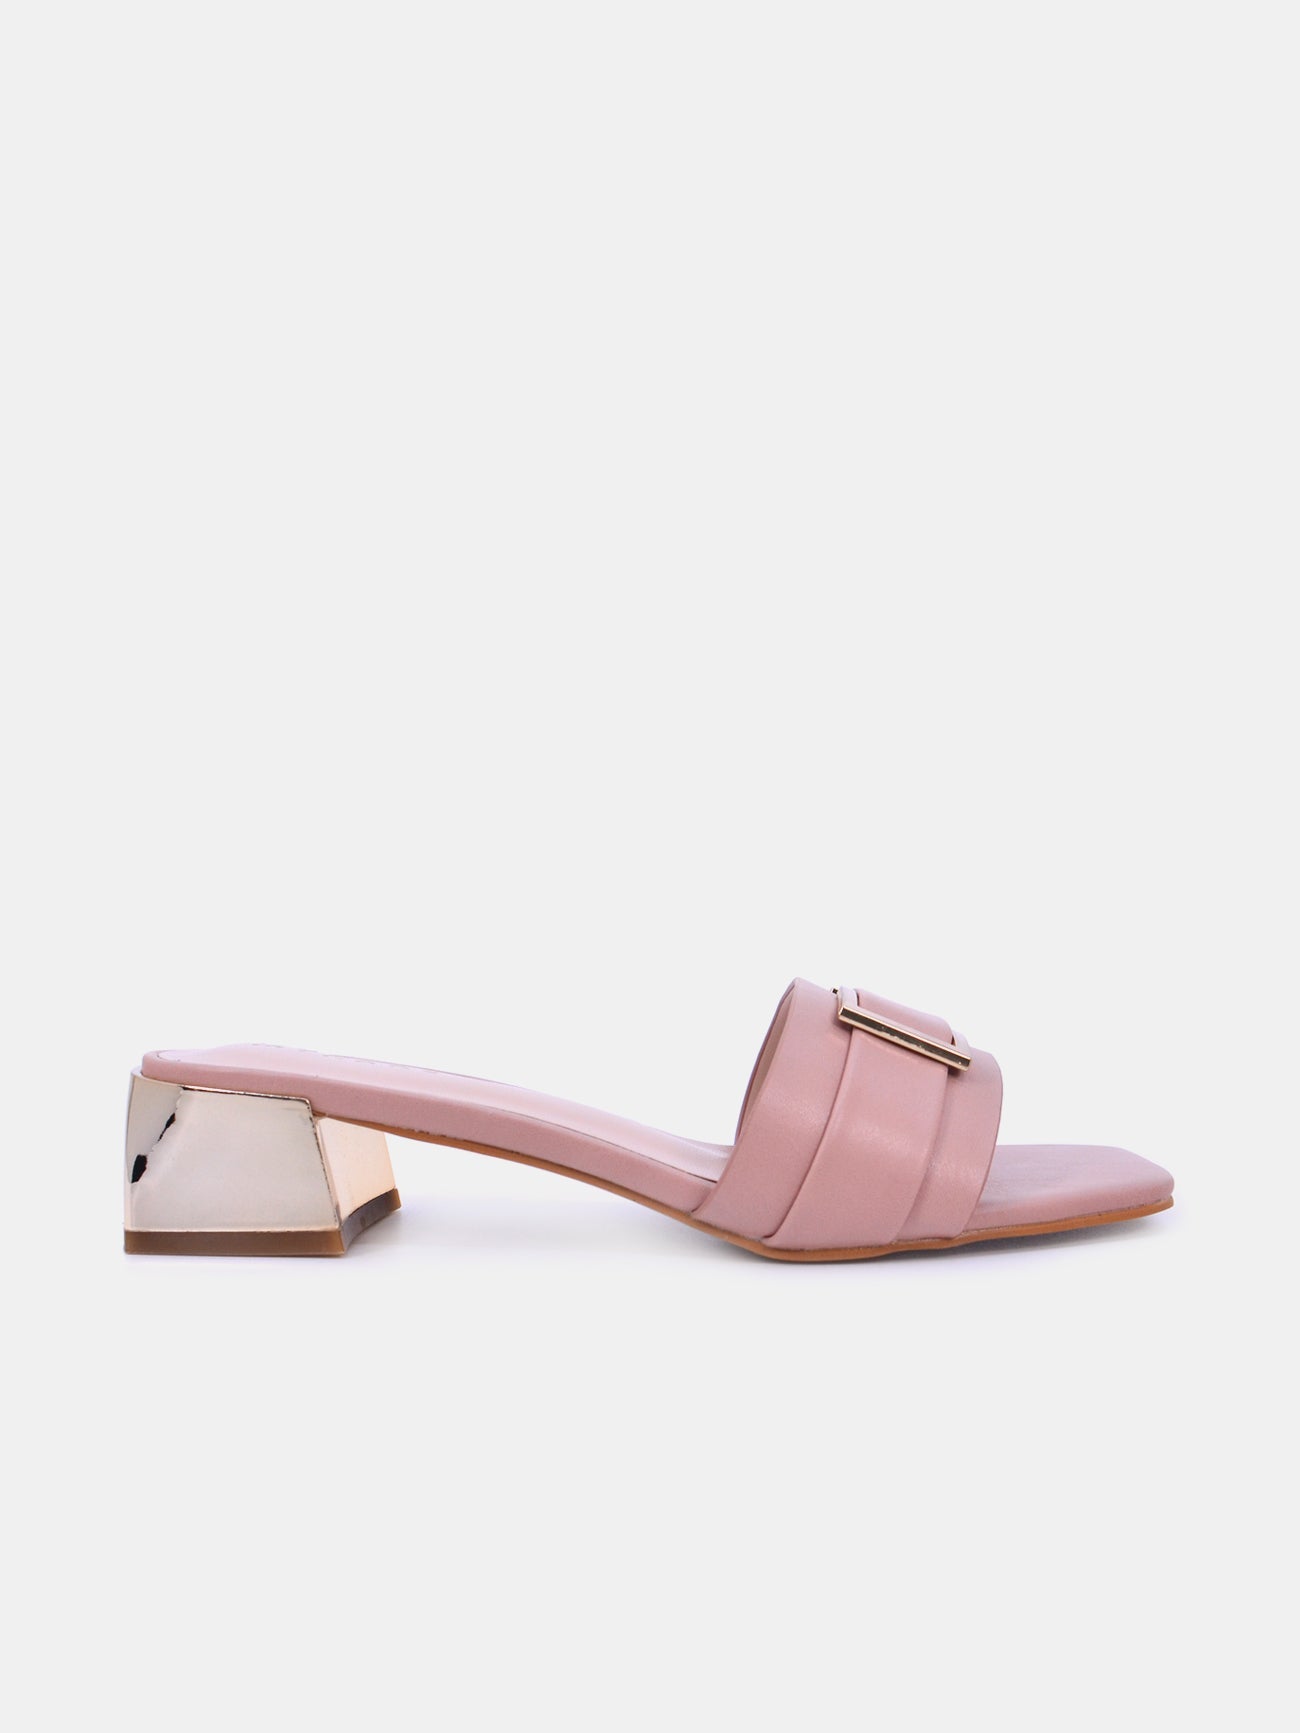 Mynaal Serix Women's Block Heel Sandals #color_Pink